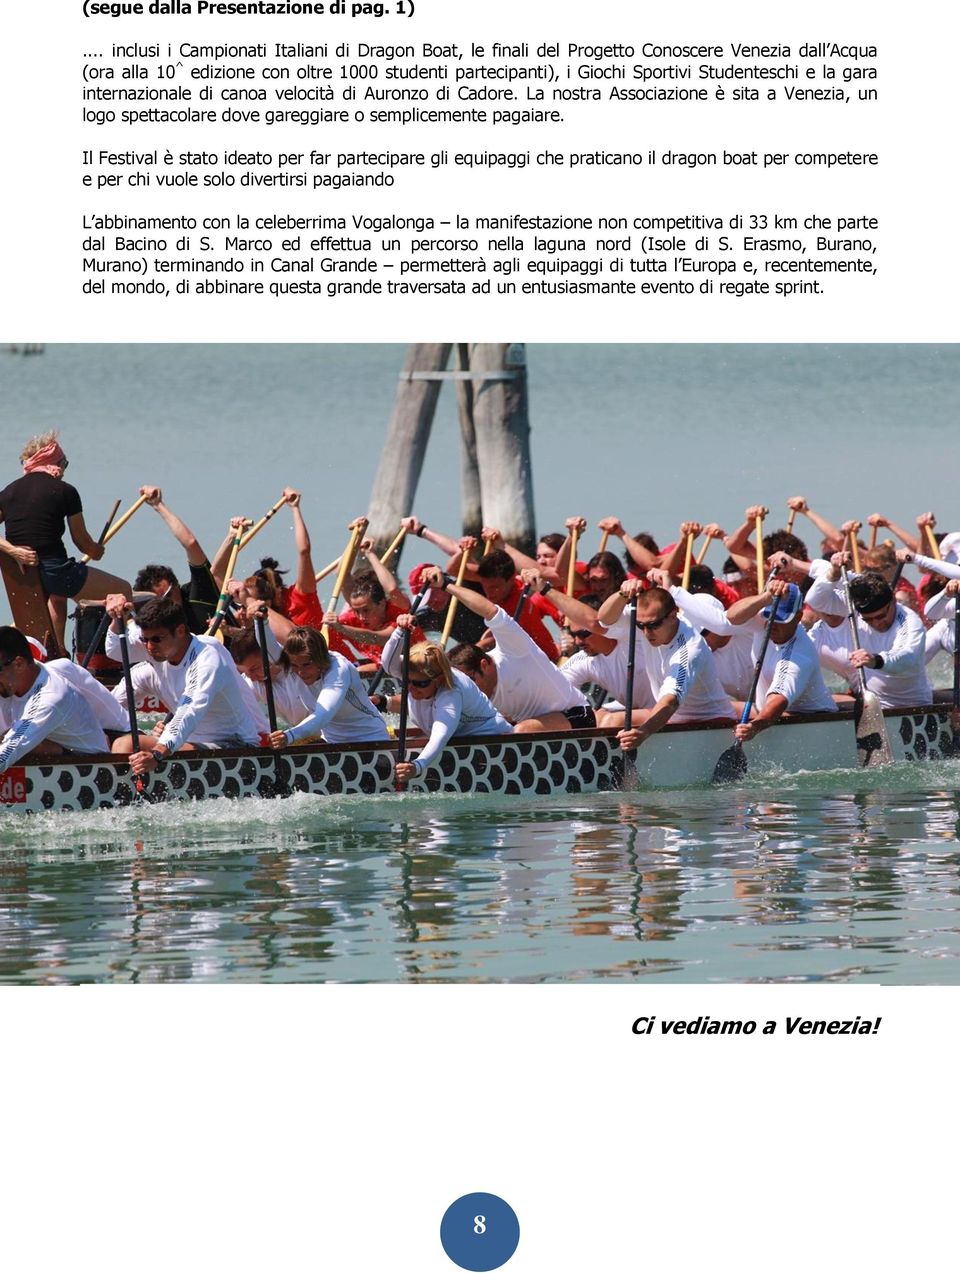 gara internazionale di canoa velocità di Auronzo di Cadore. La nostra Associazione è sita a Venezia, un logo spettacolare dove gareggiare o semplicemente pagaiare.